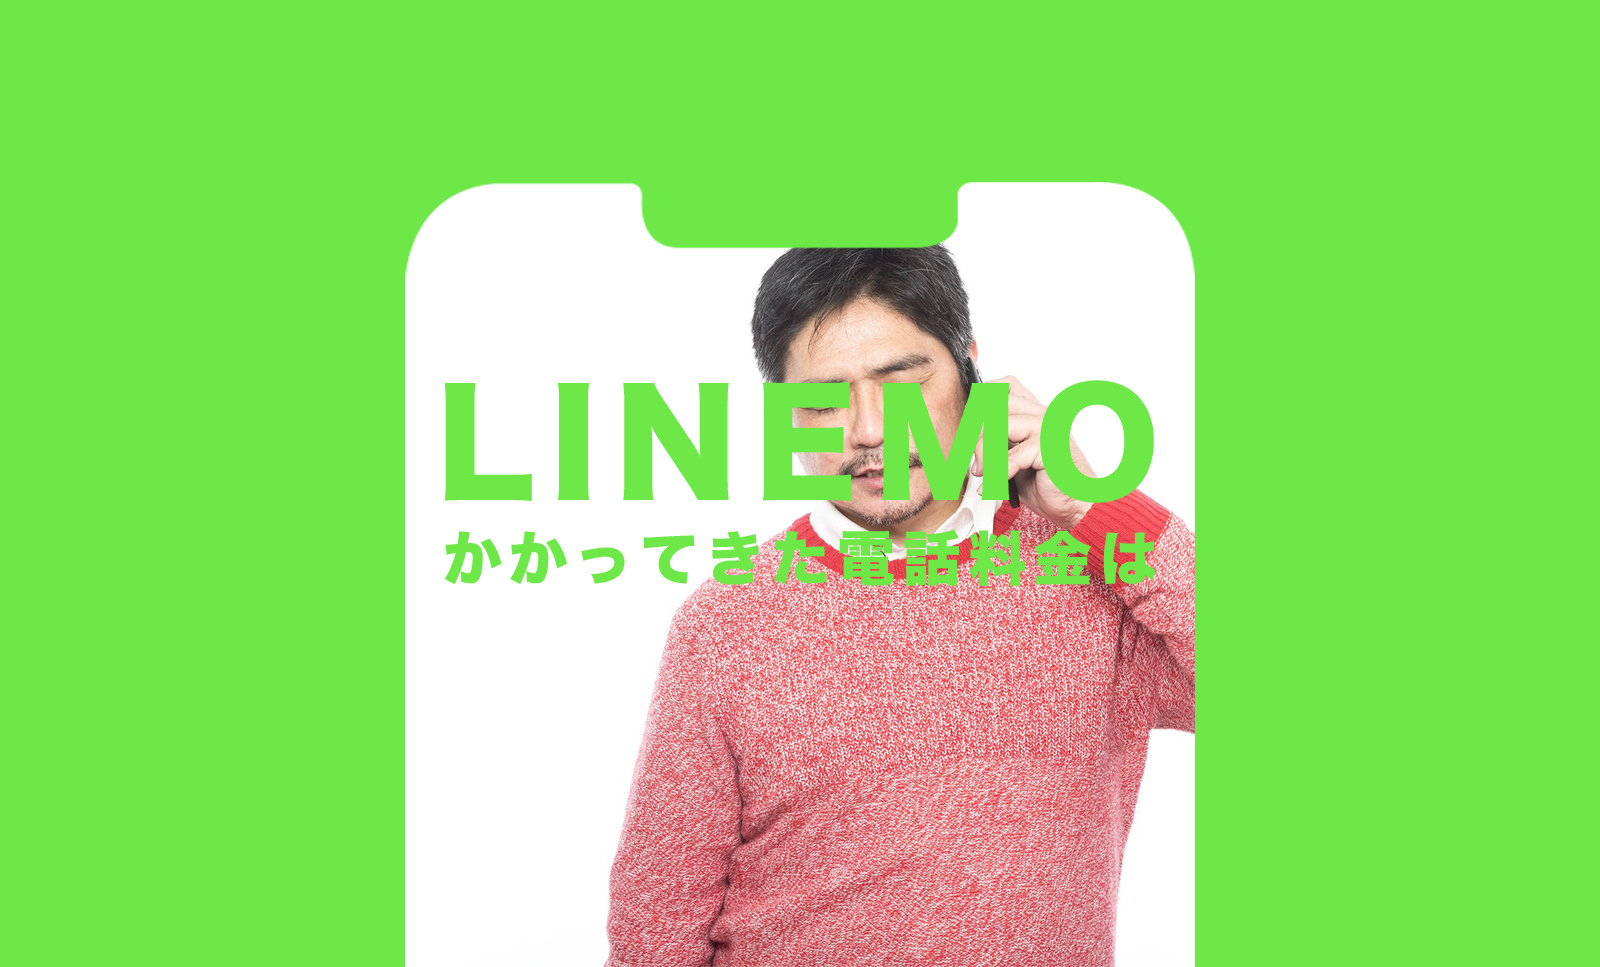 LINEMO(ラインモ)でかかってきた電話の通話料金は無料。着信ならかからない。のサムネイル画像